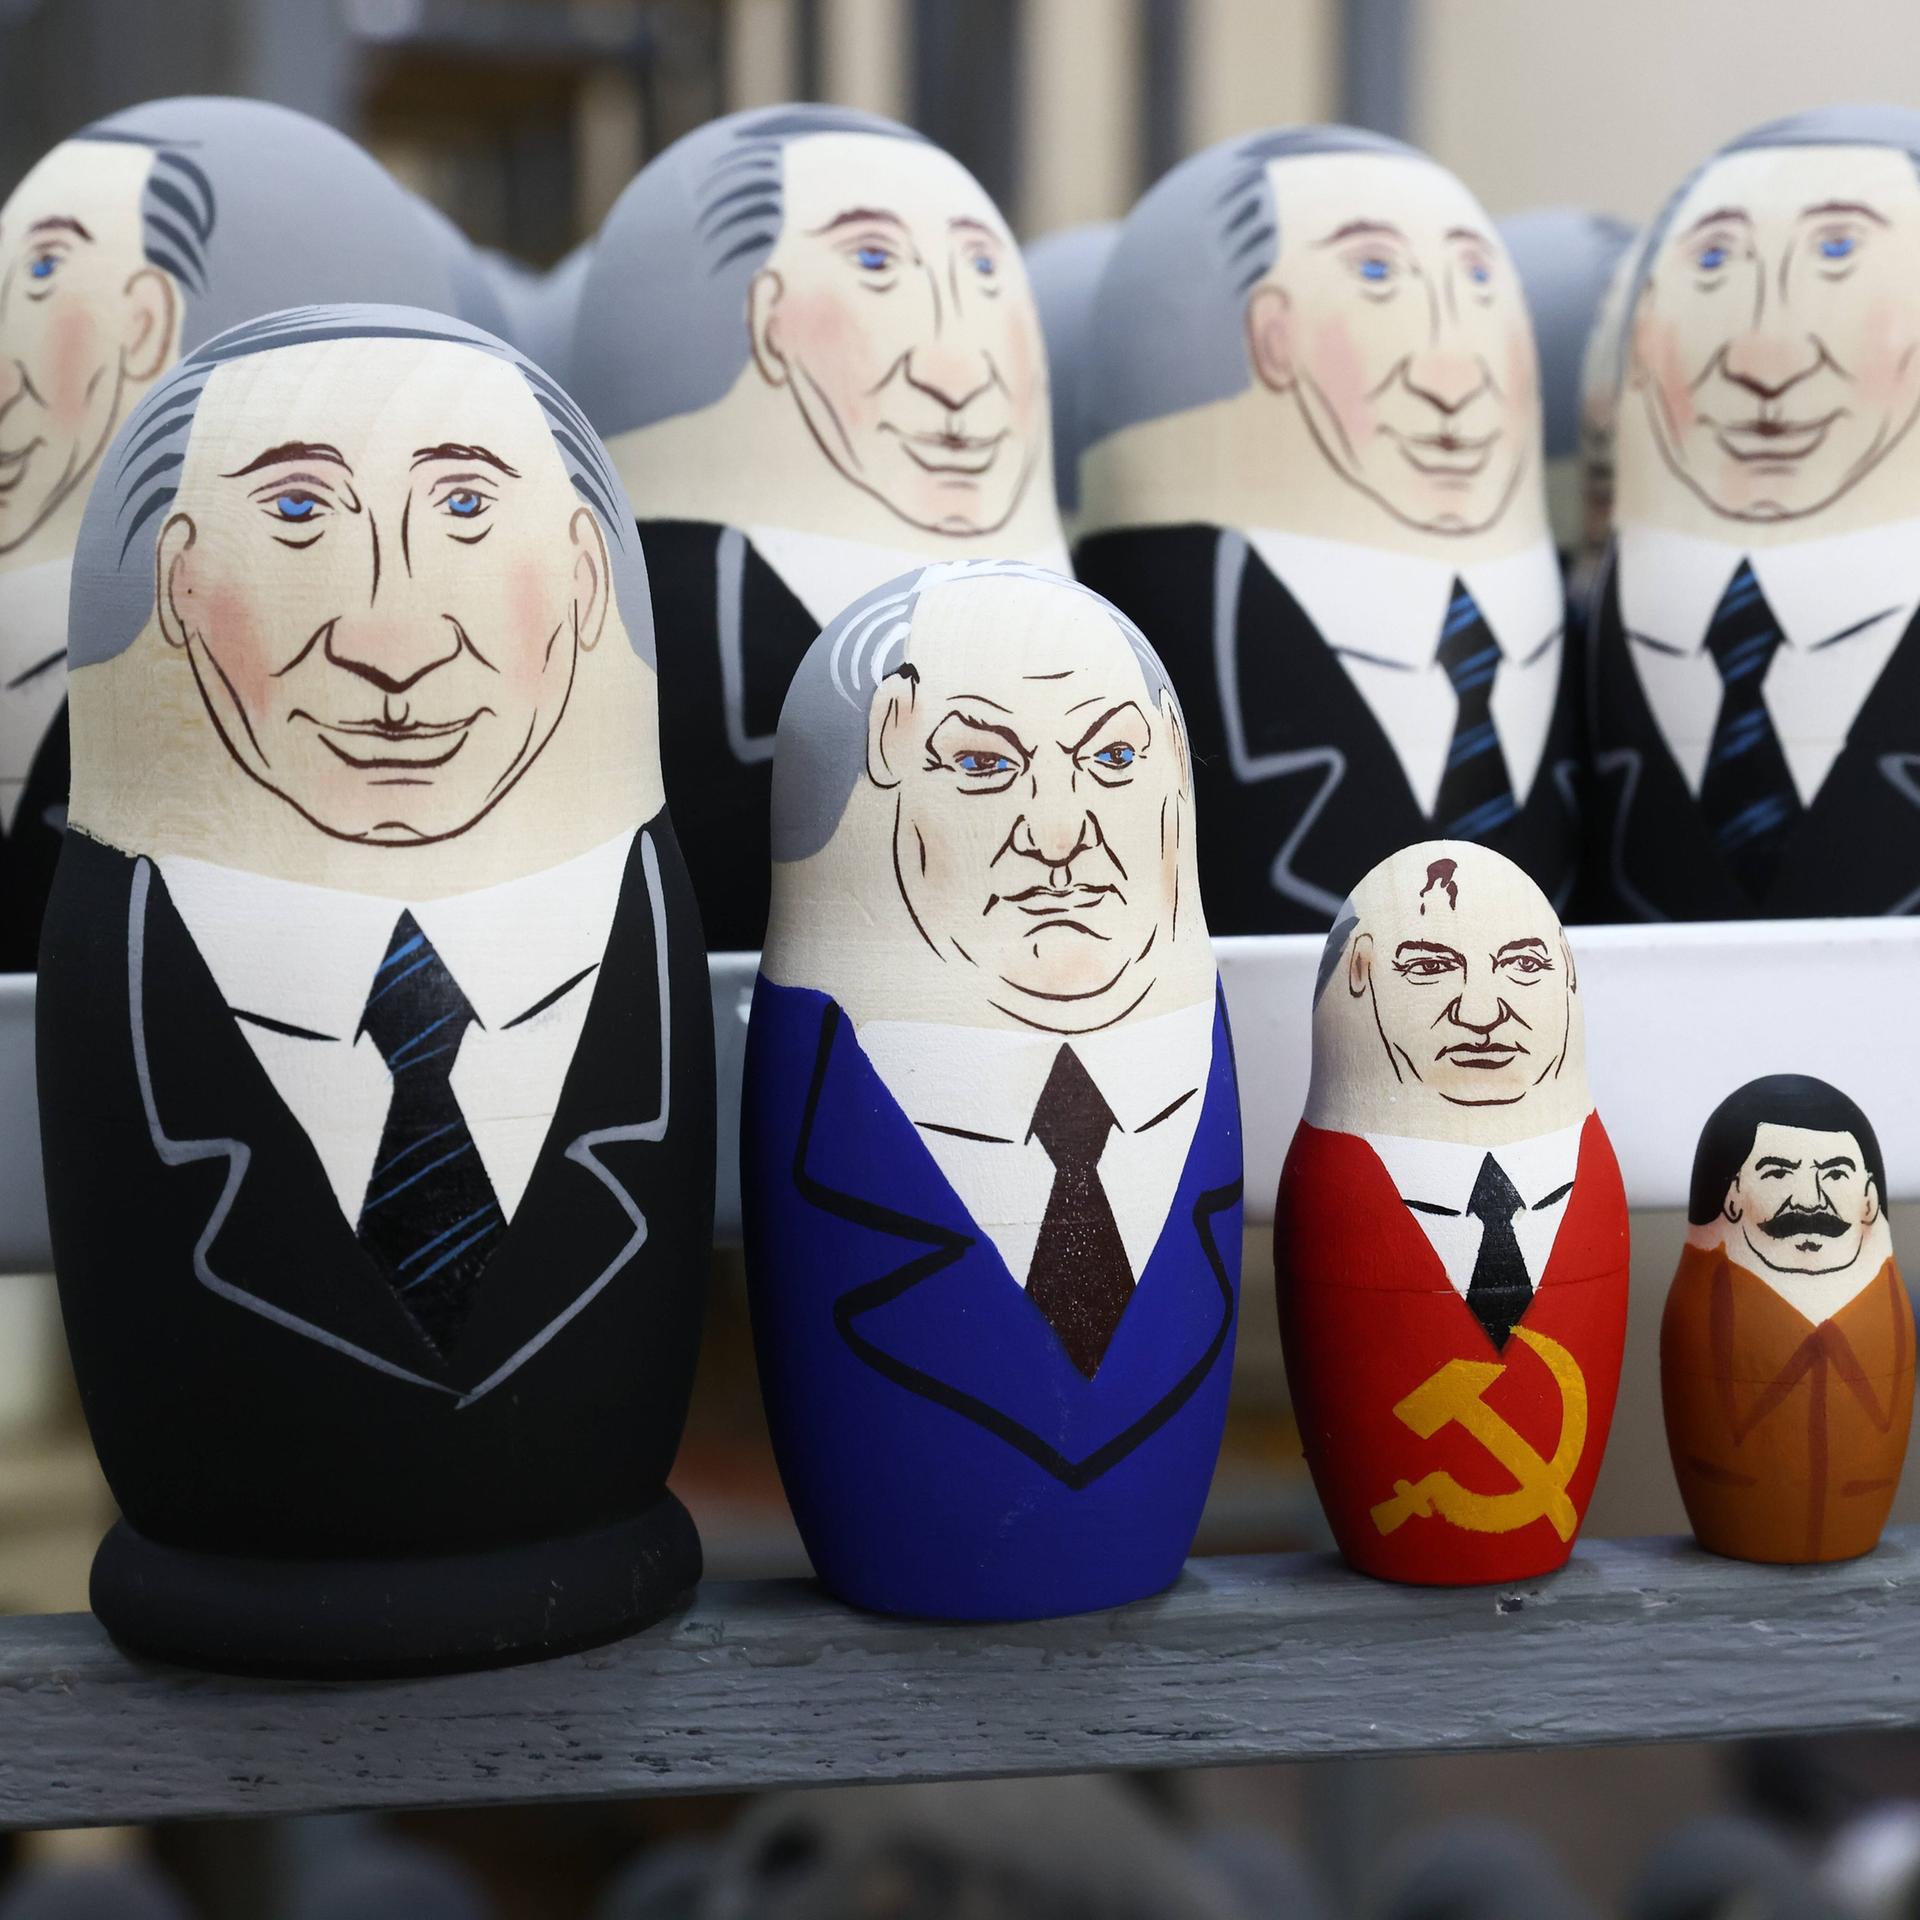 Putin als Matrjoschka, mit Figuren von Jelzin, Gorbatschow, Stalin und Lenin.